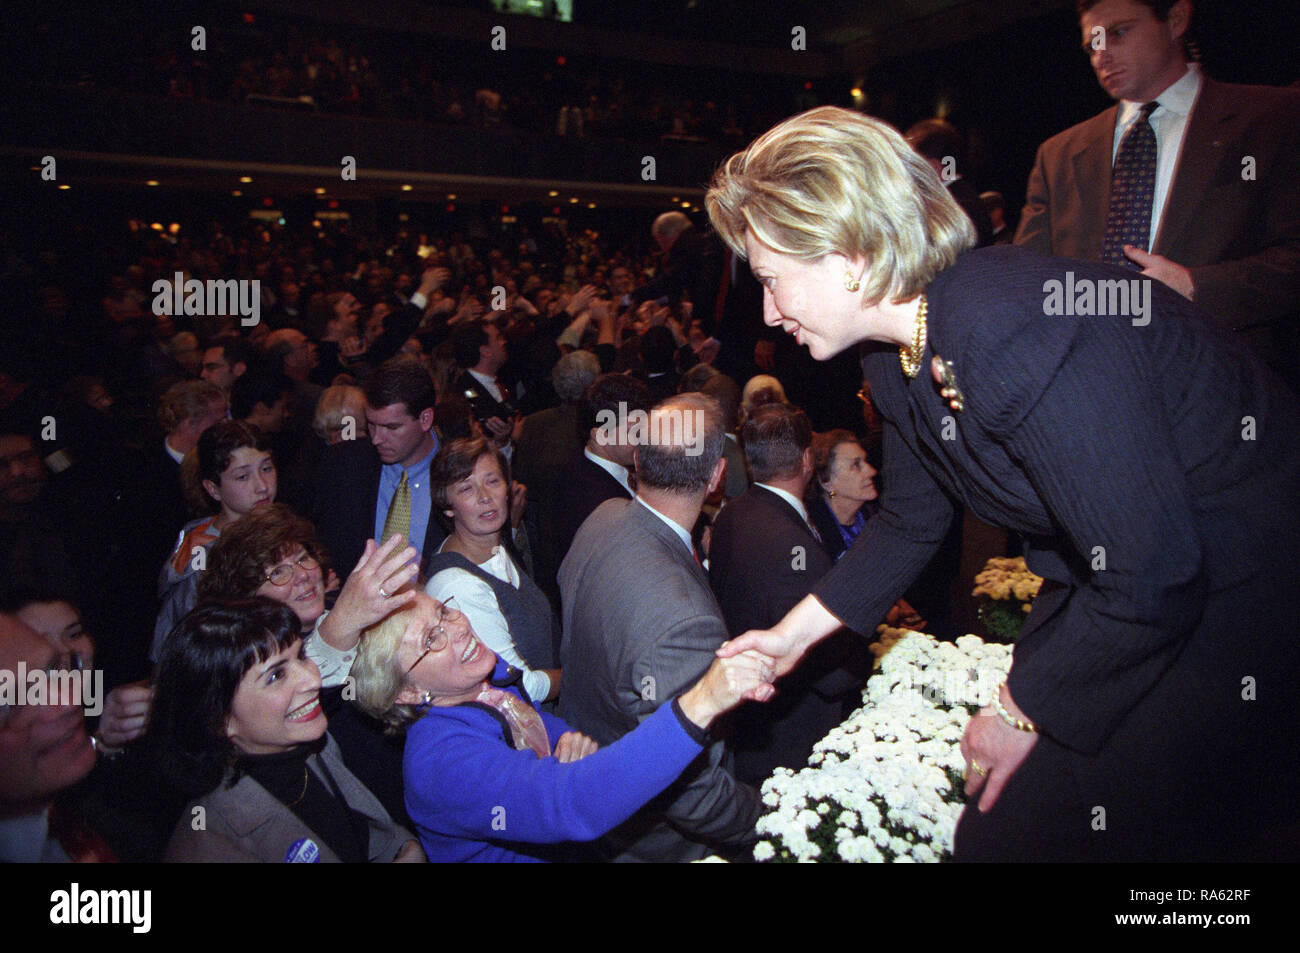 Foto von First Lady Hillary Rodham Clinton Hände schütteln mit einer Dame in der Menge an einem 'Hillary Rodham Clinton für Senat' Event in Hempstead, New York 10/22/2000 Stockfoto